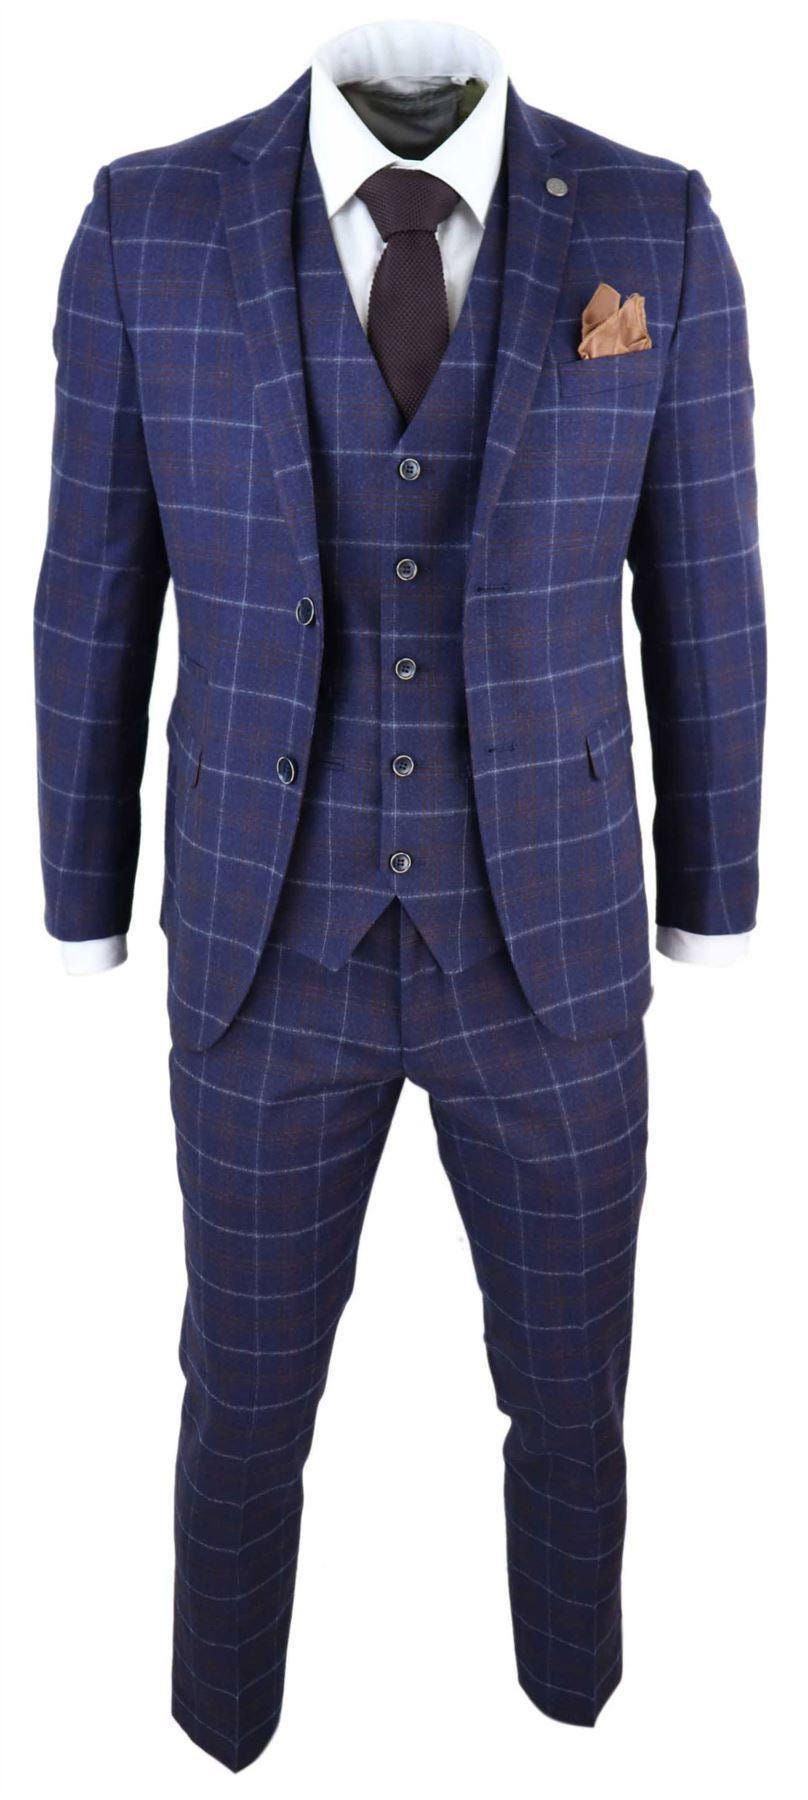 Mens 3 Piece Blue Suit Herringbone Tweed Check Tailored Fit - Etsy UK